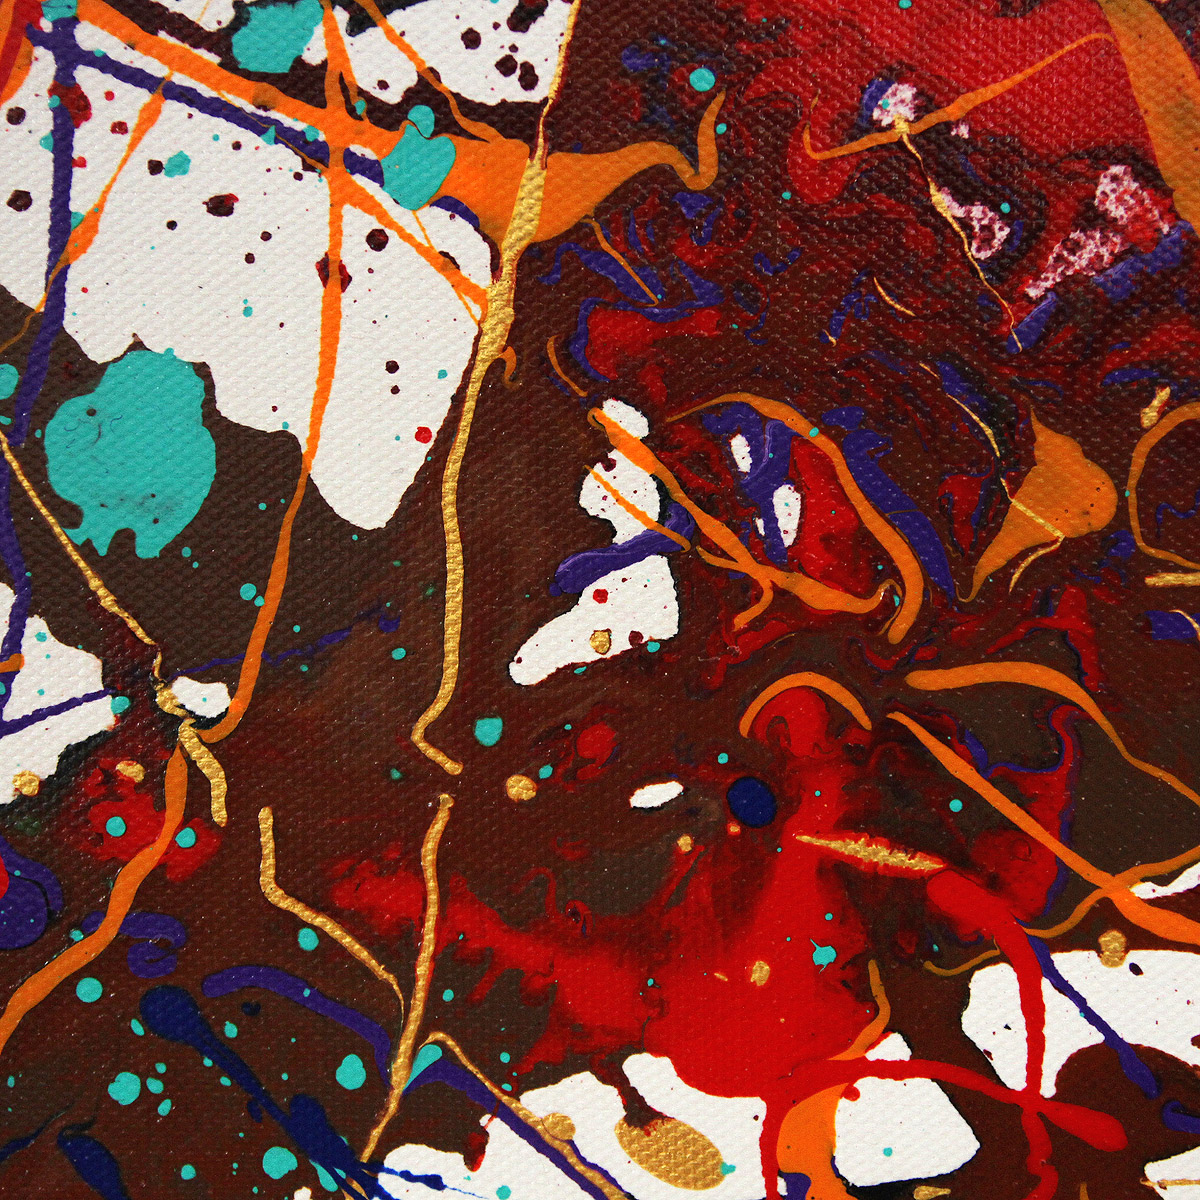 Abstrakte Kunstbilder, G. Hung: "Farben in rhythmischer Beziehung"